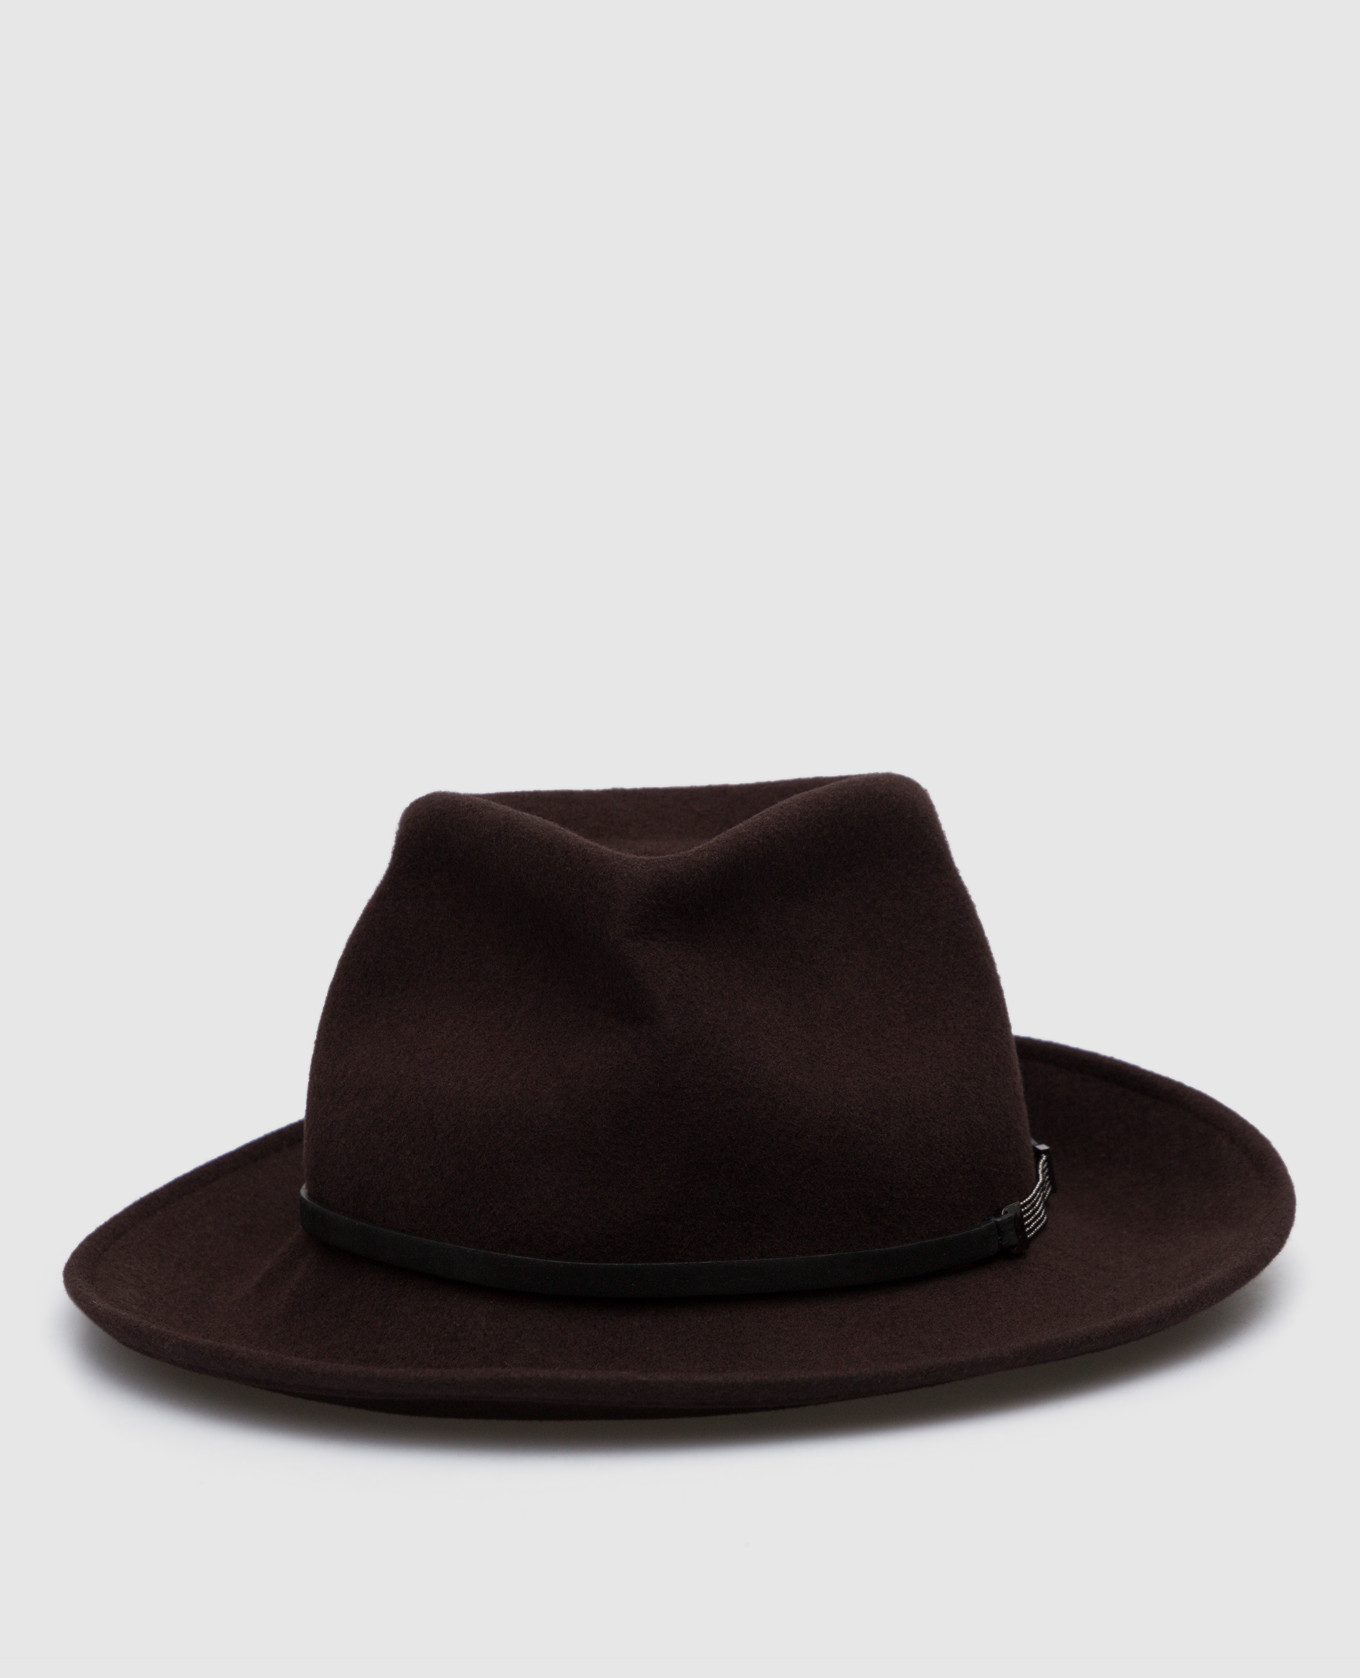 Dark brown hat with monil chain